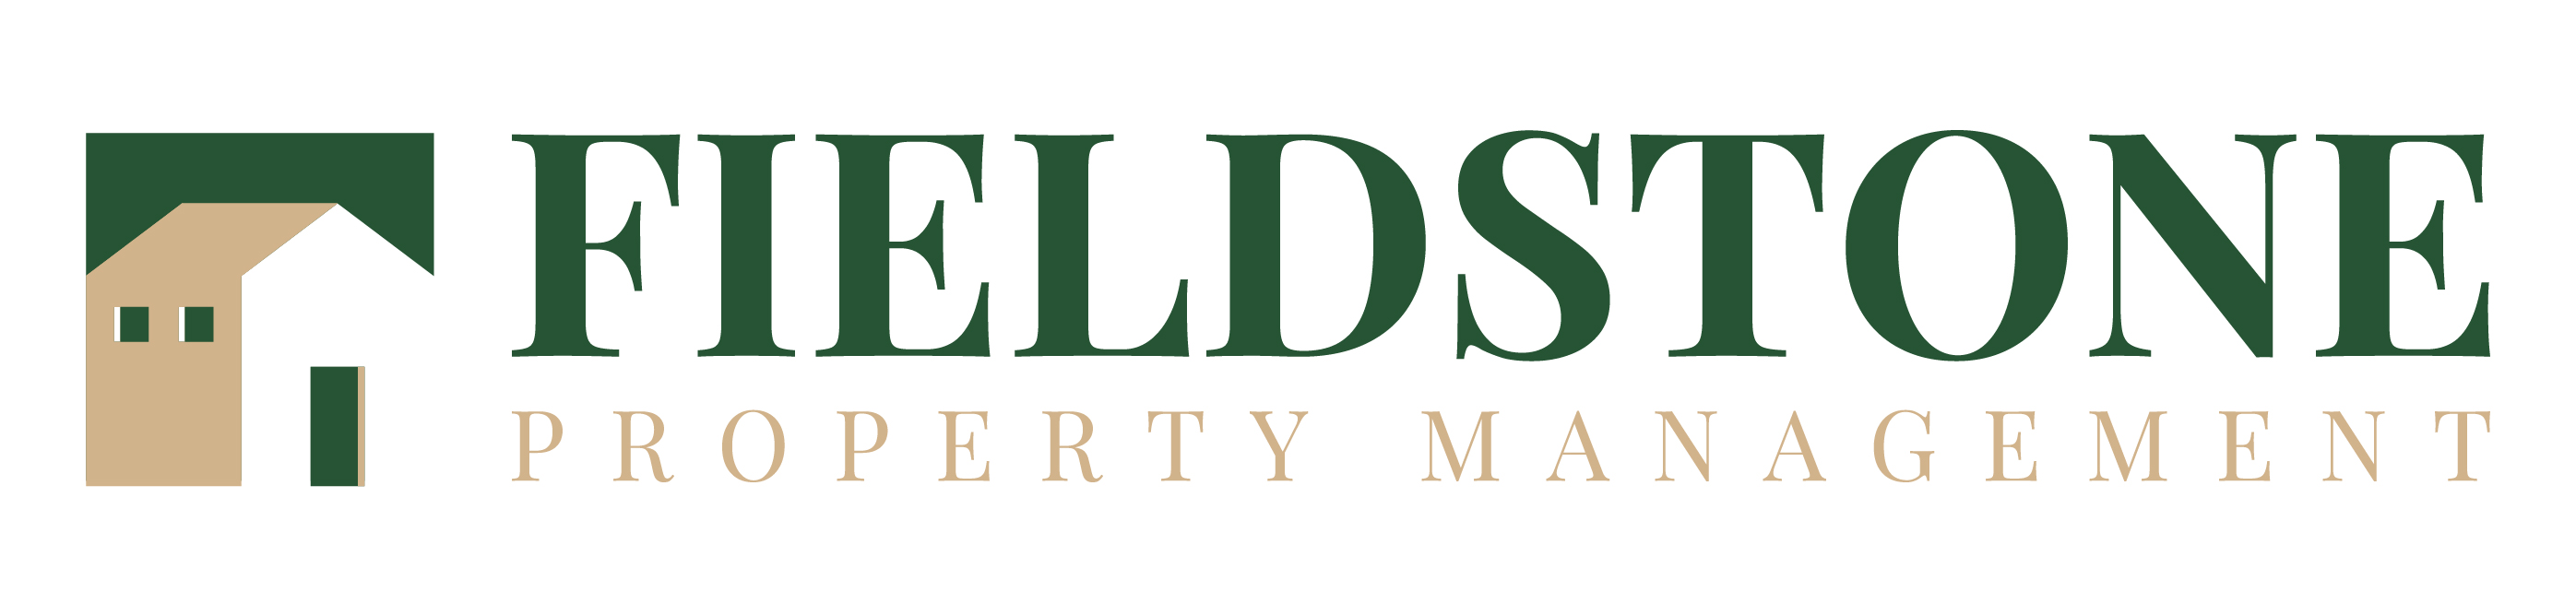 Fieldstone Property Management logo